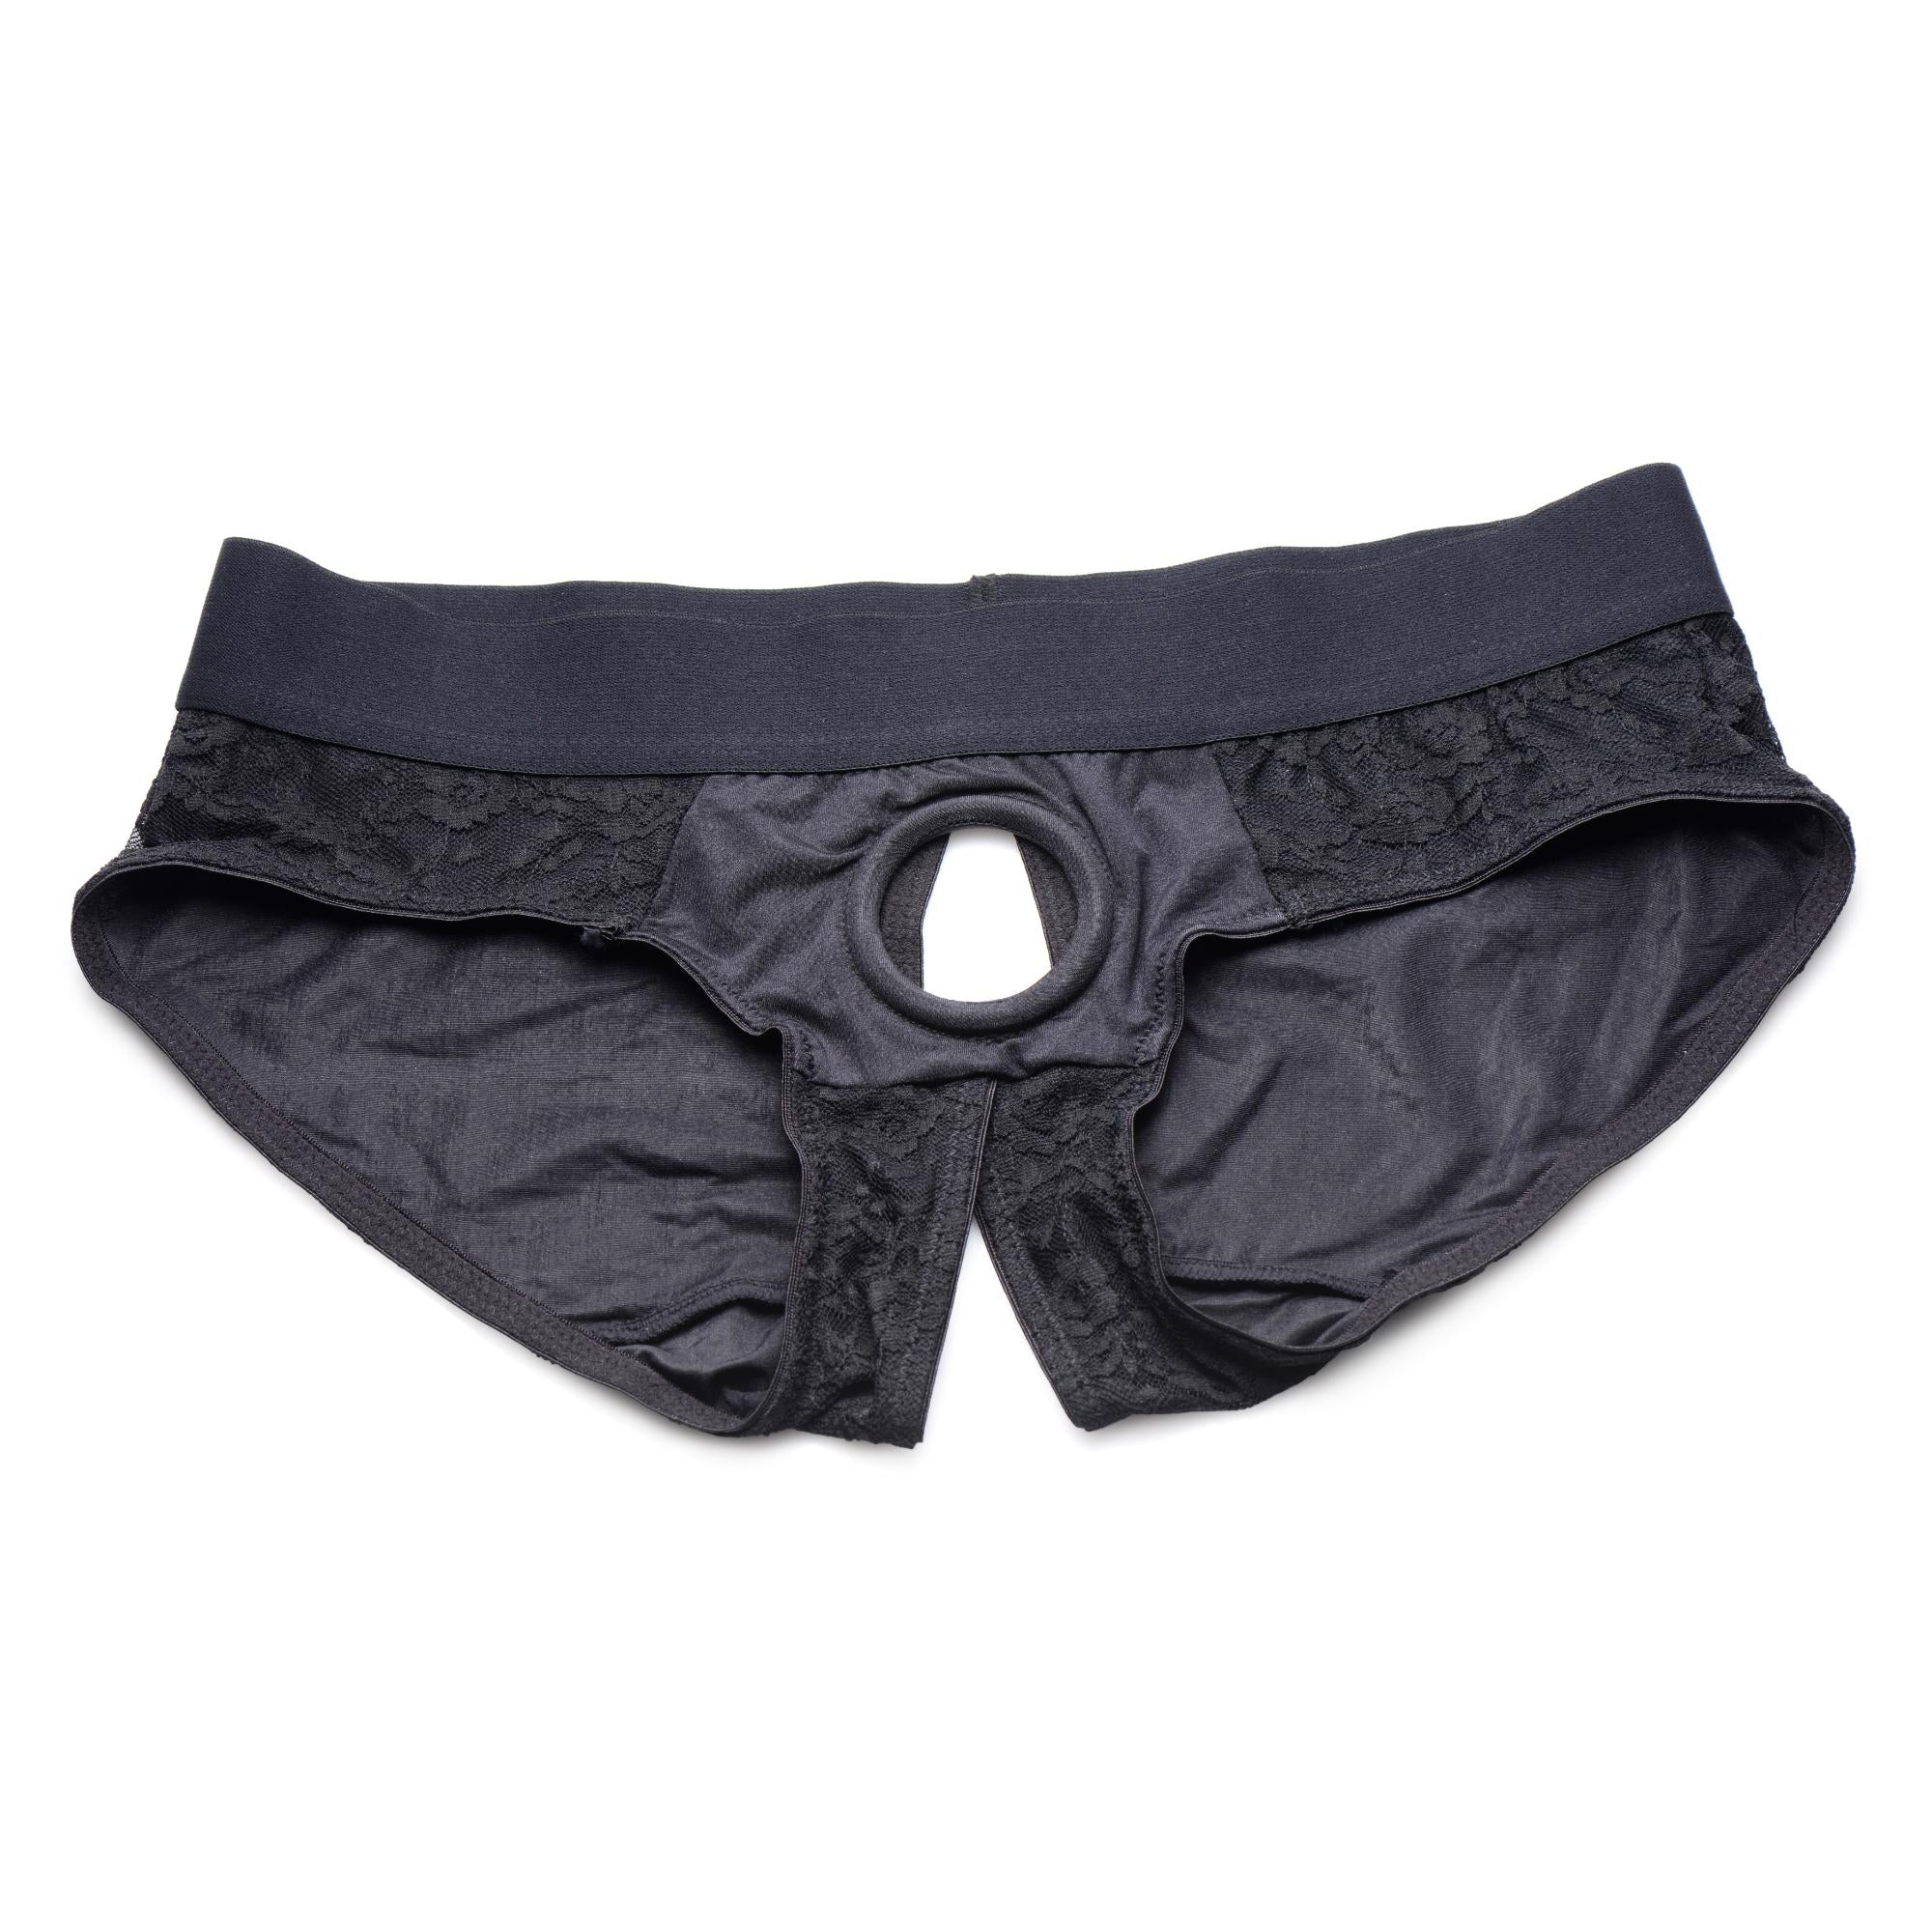 Strap U Lace Envy Lace Crotchless Panty Harness Black/Black